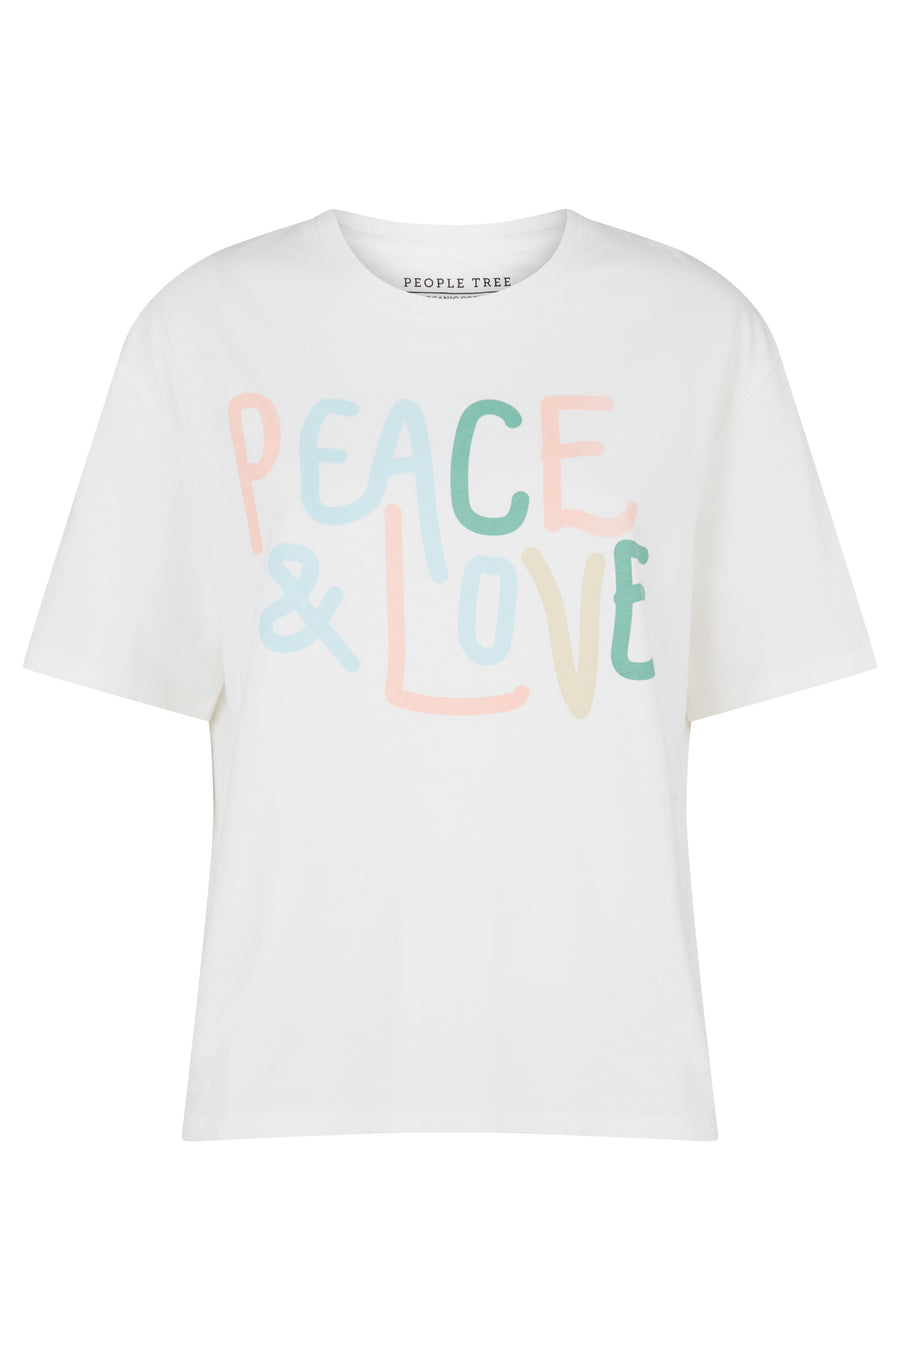 People Tree T-shirt de la paix et de l'amour éthique et durable et durable en Eco White 100% Coton certifié biologique